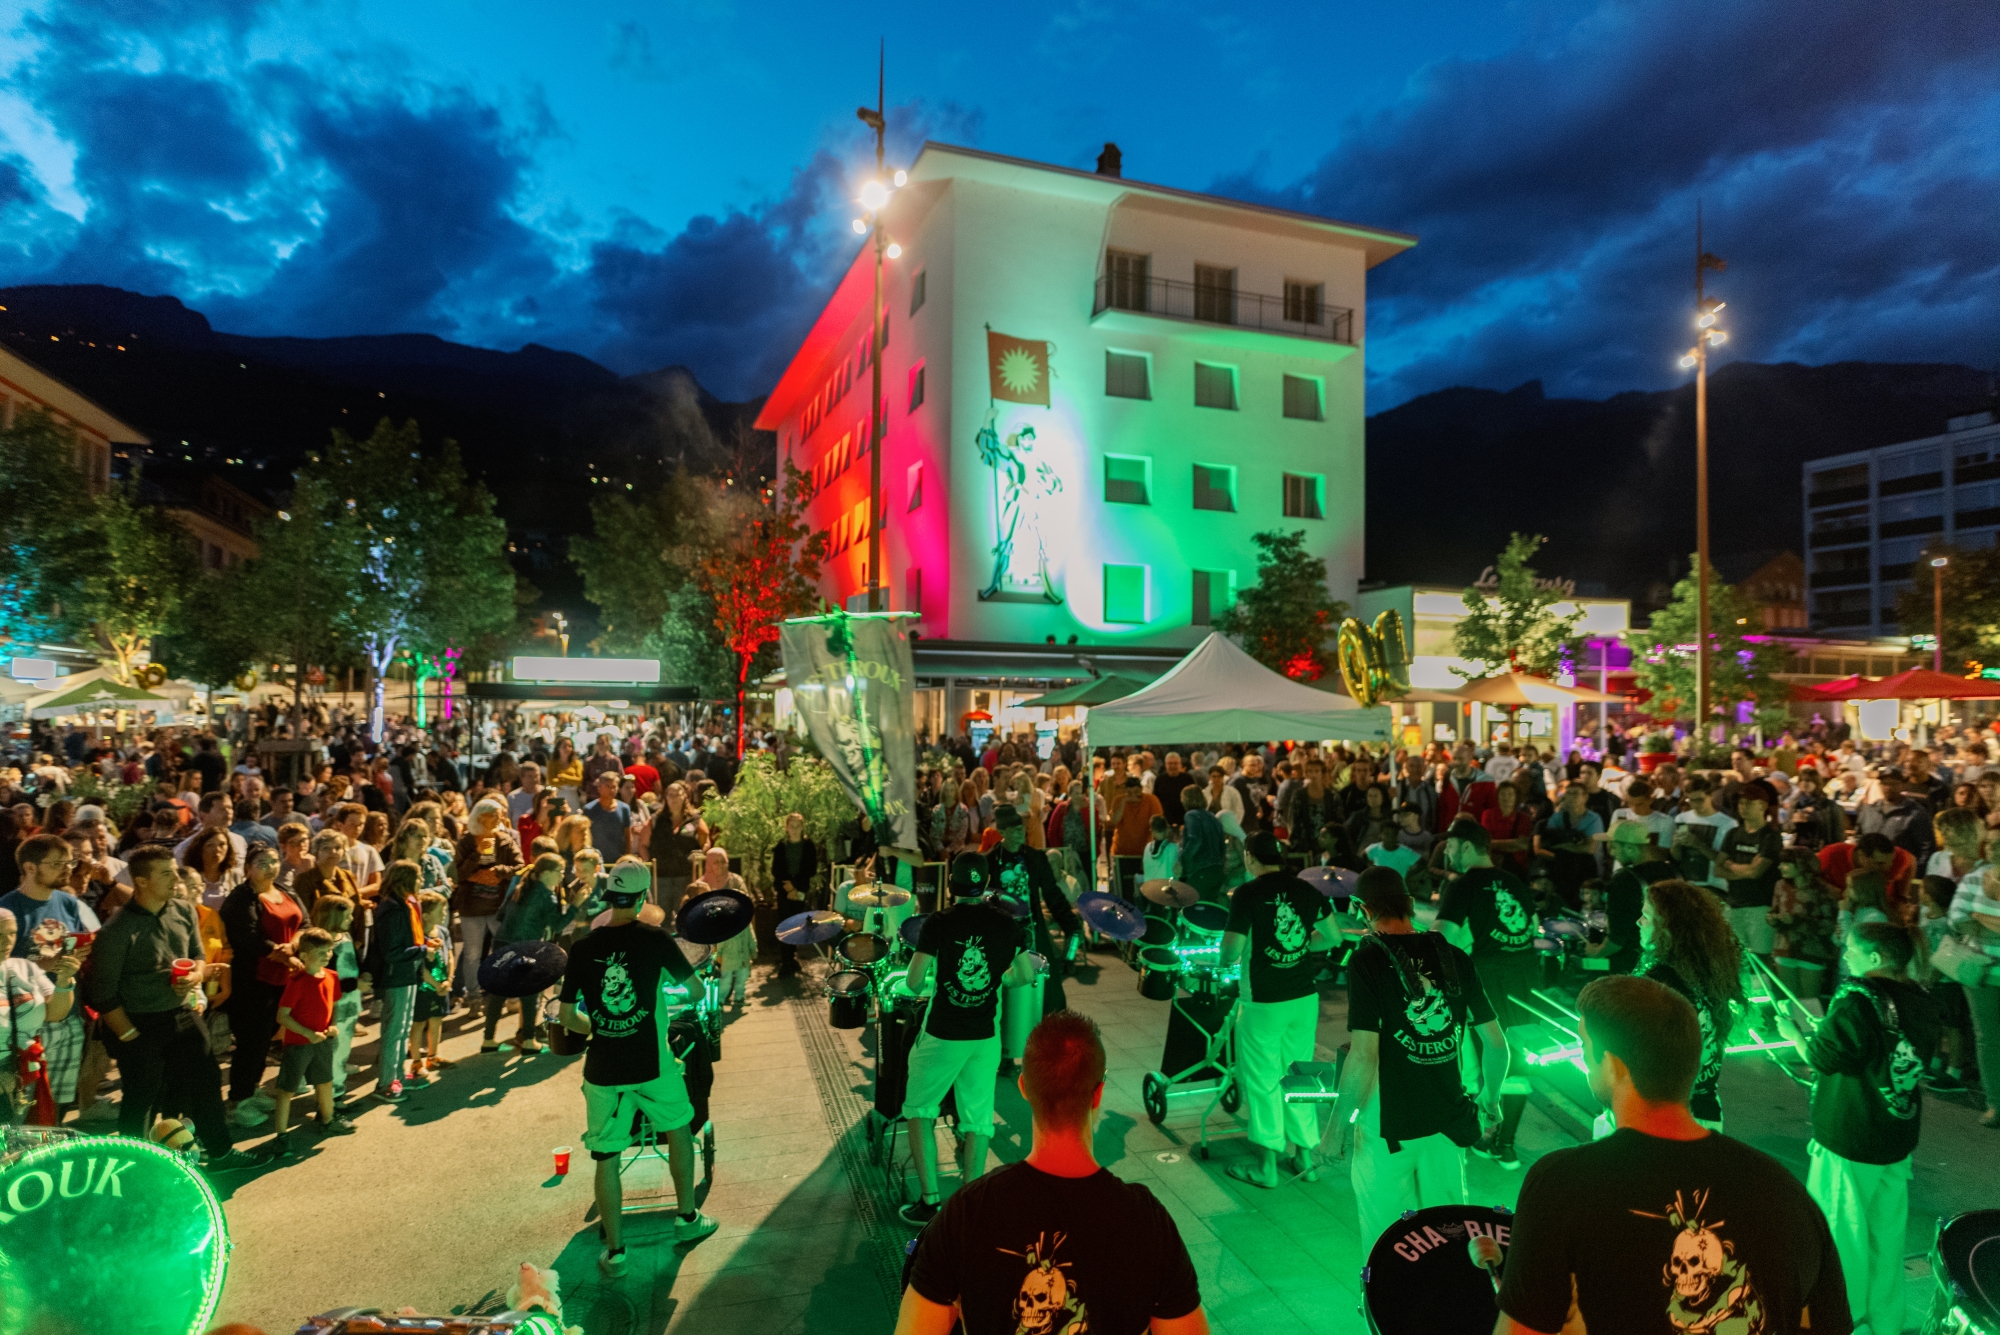 Depuis le début de l’été, le festival qui anime la place de l’Hôtel-de-Ville de Sierre atteint même des records de fréquentation, puisqu’il a attiré plus de 11 000 visiteurs en cinq vendredis.